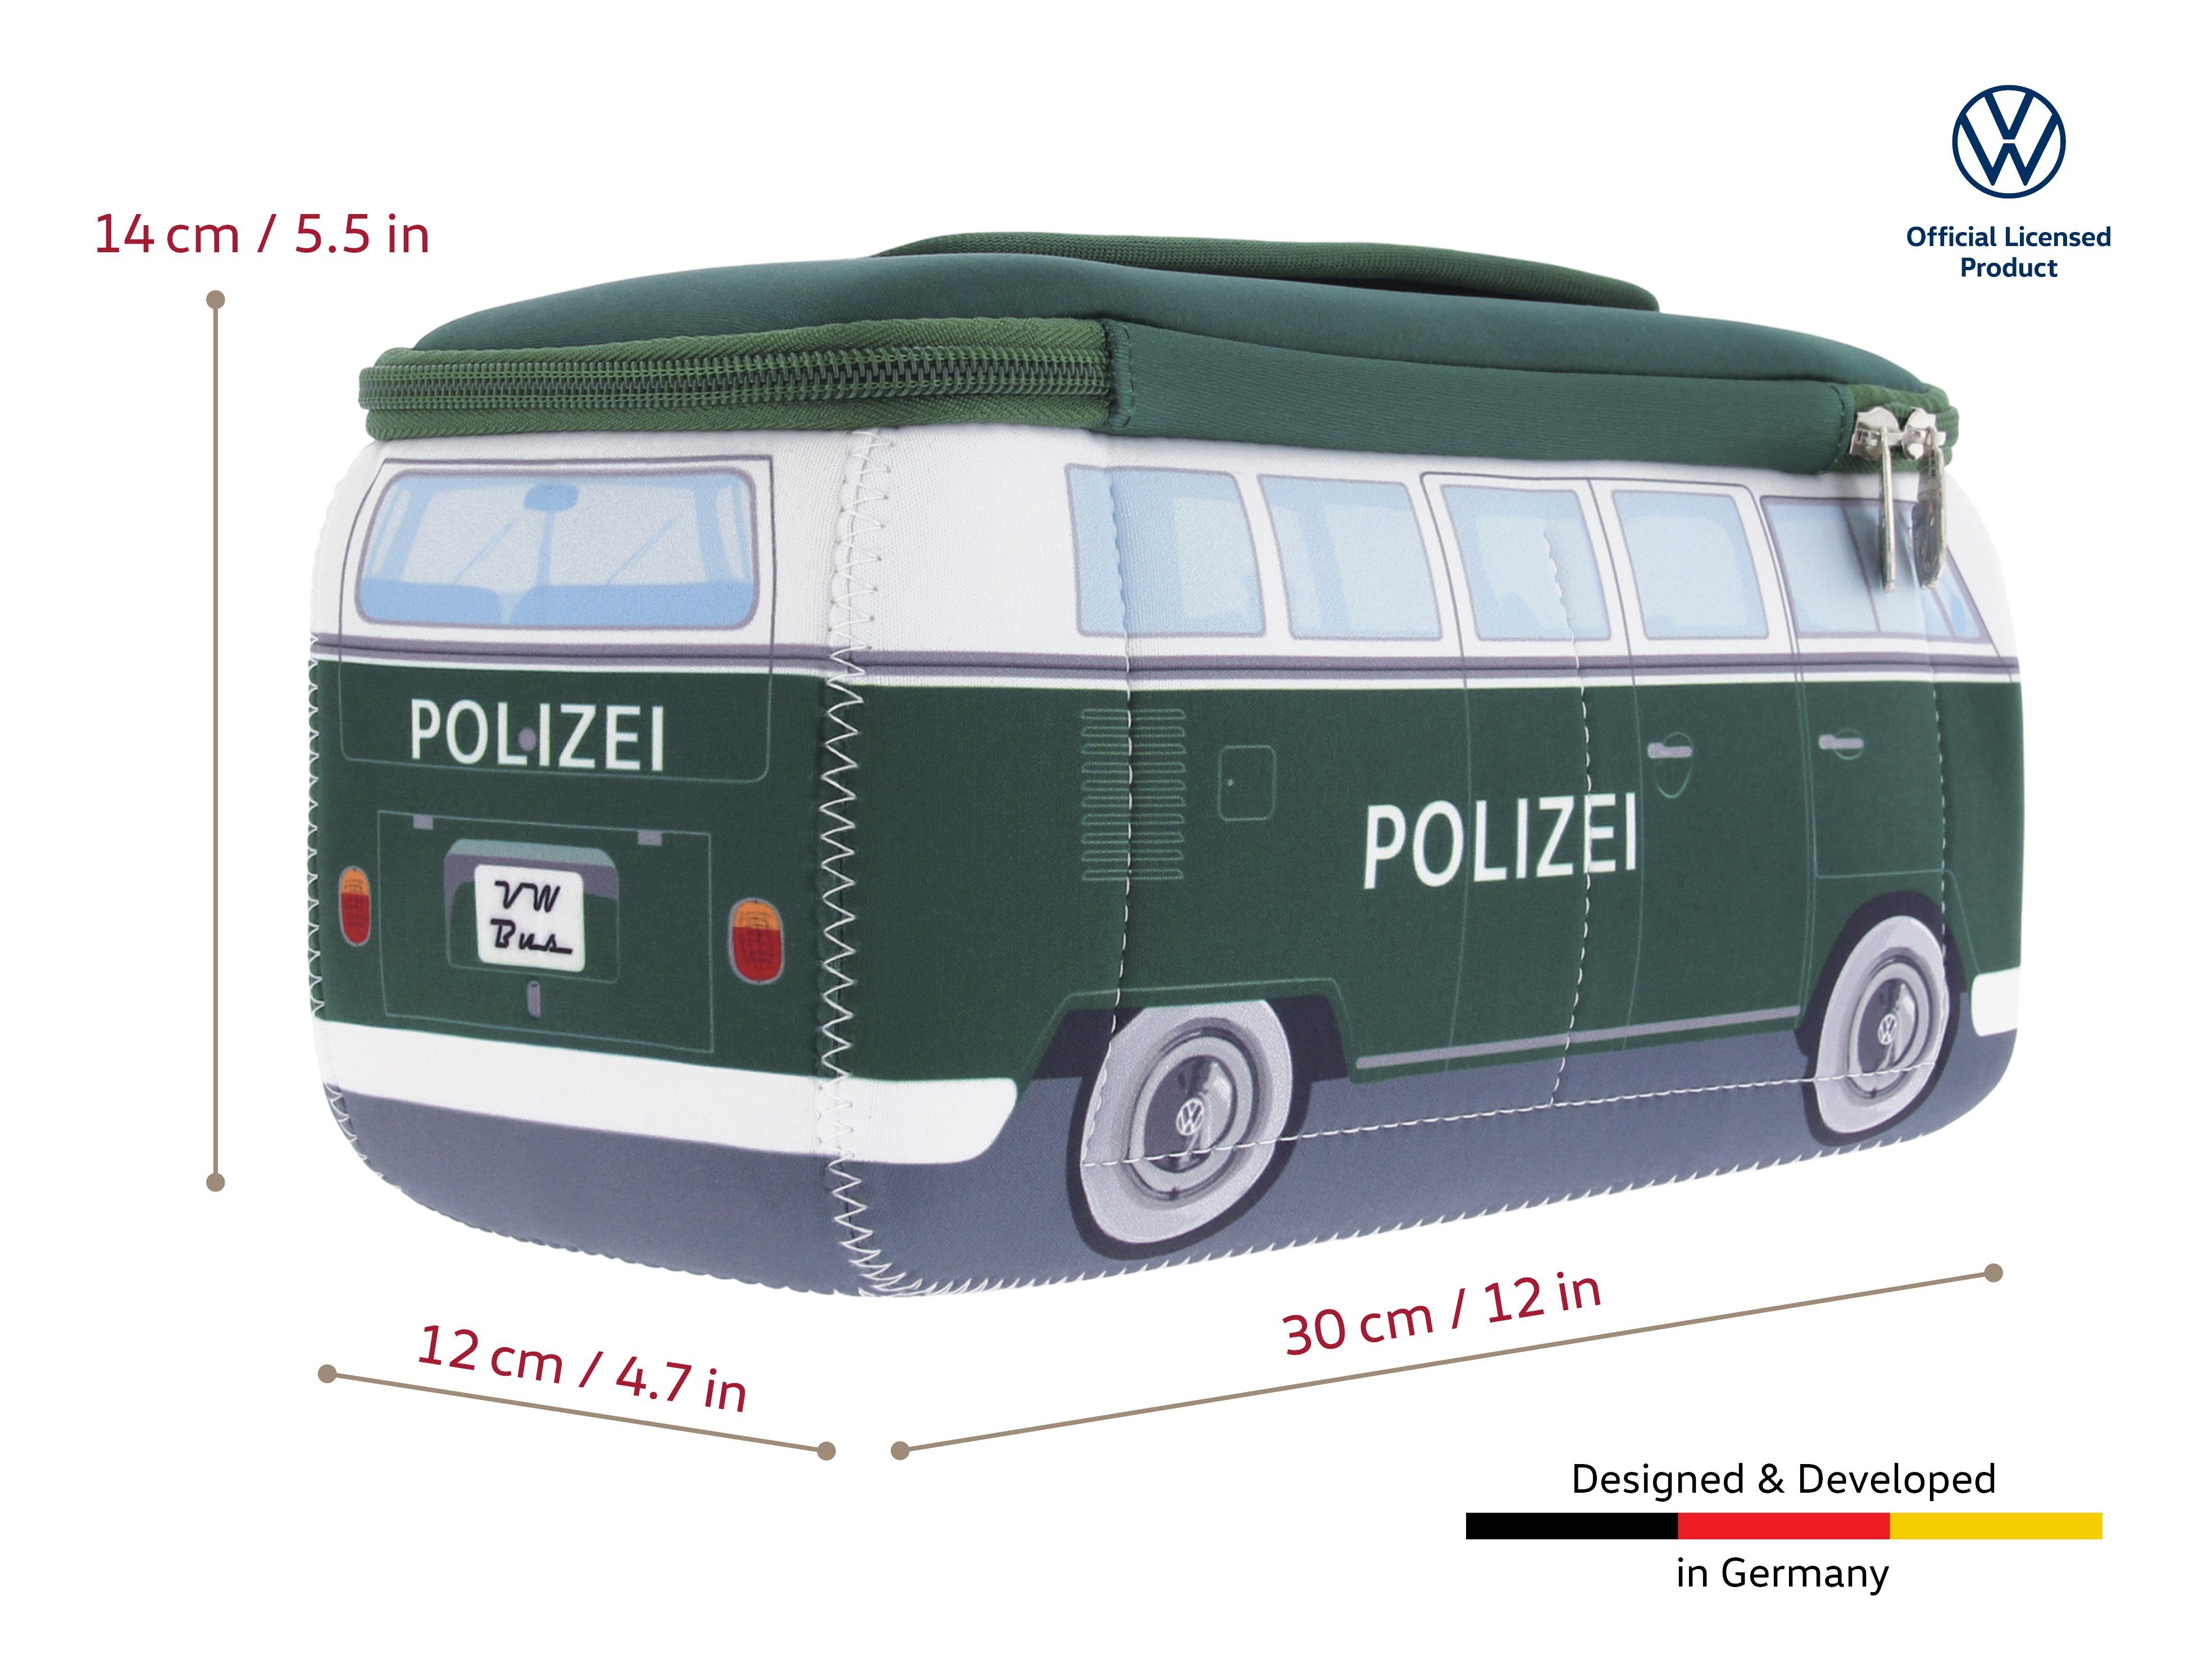 Polizeibus VW Volkswagen Kulturbeutel by Kosmetiktasche Schminktasche, im Collection Neopren Design BRISA Reisebeutel,